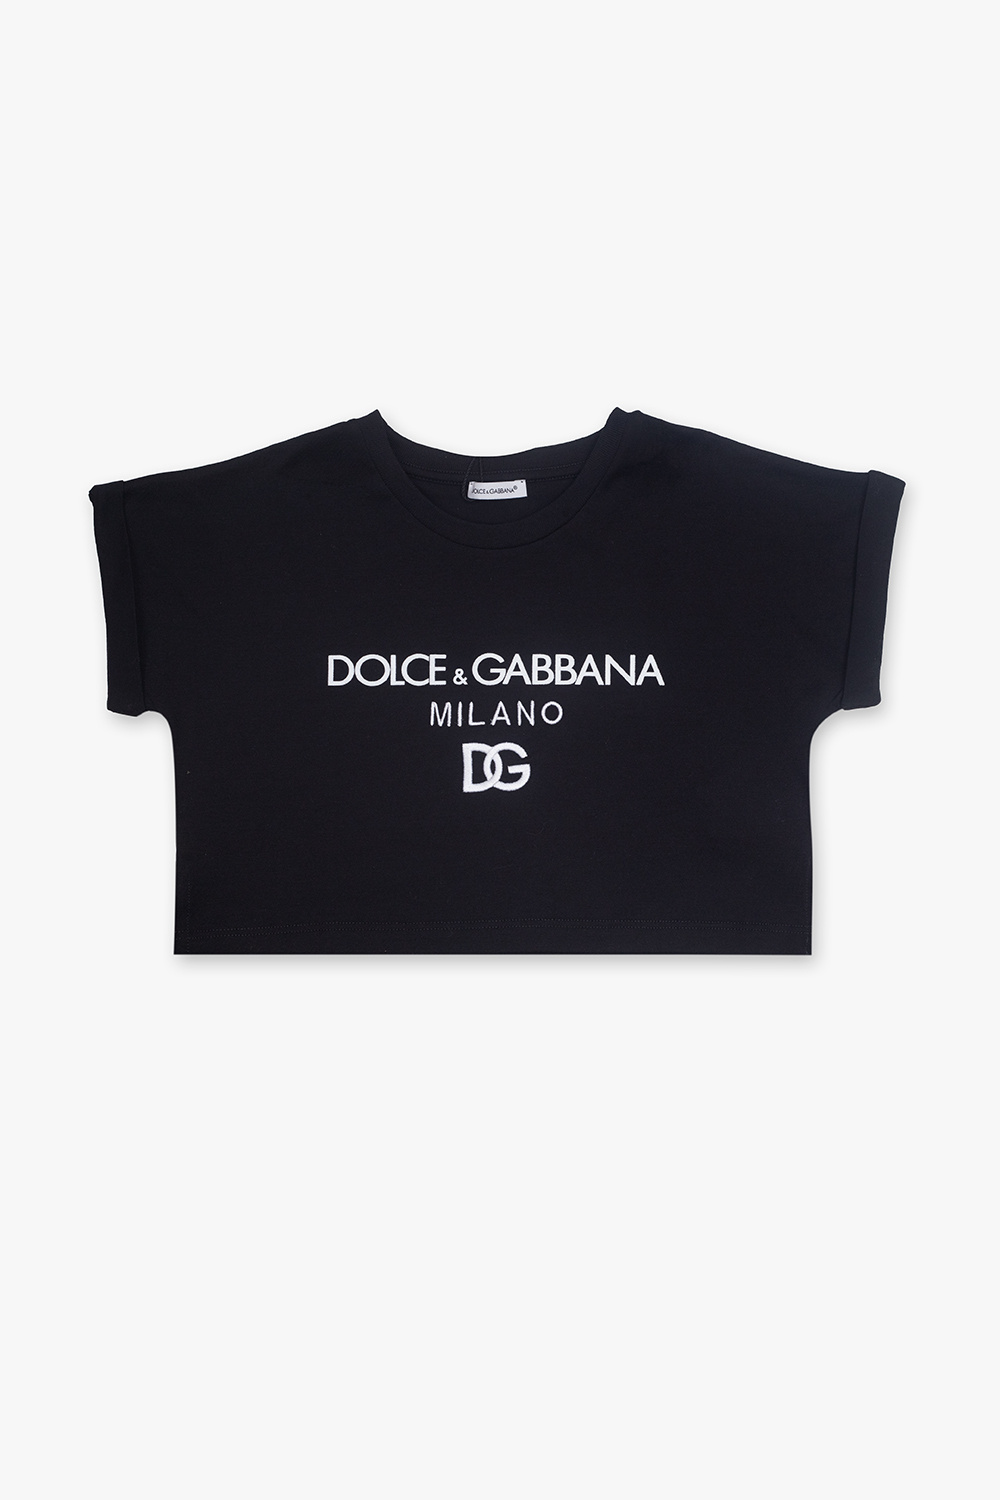 Dolce & Gabbana Vestido Largo 740104 Dolce & Gabbana Kids Grob gestrickte Mütze Weiß